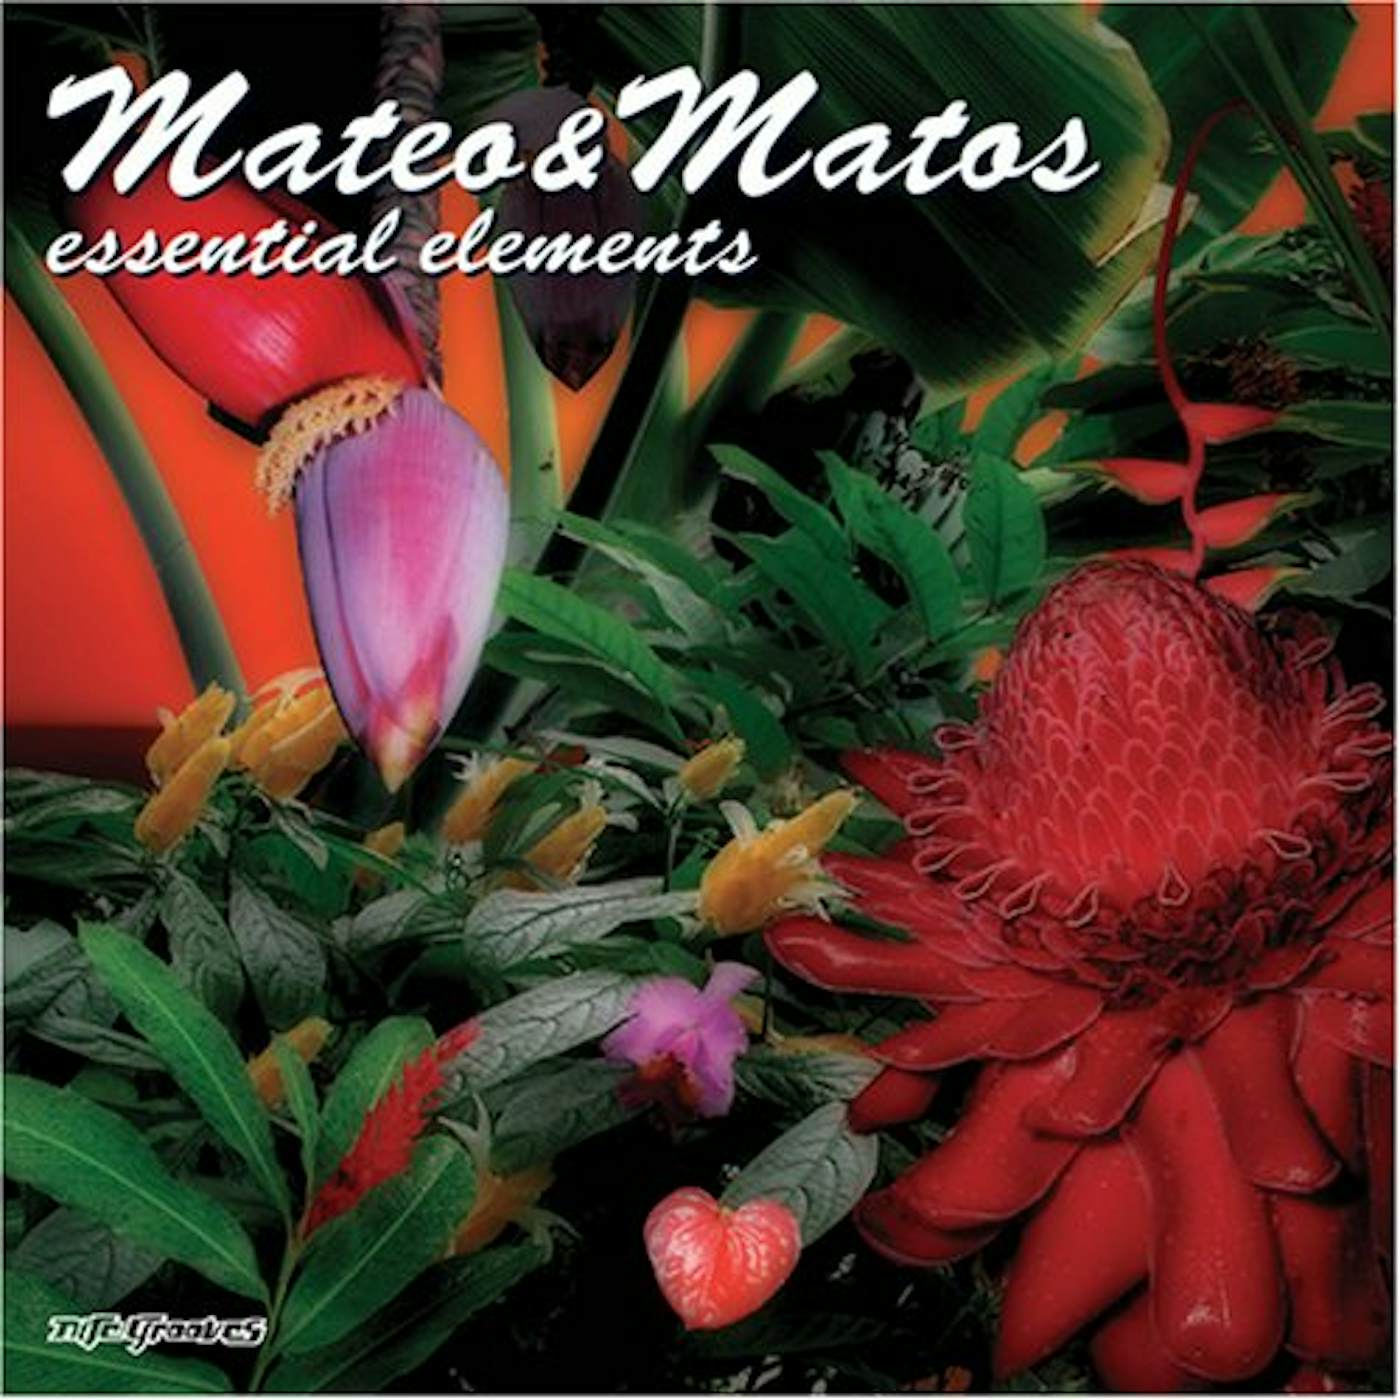 Mateo & Matos ESSENTIAL ELEMENTS CD